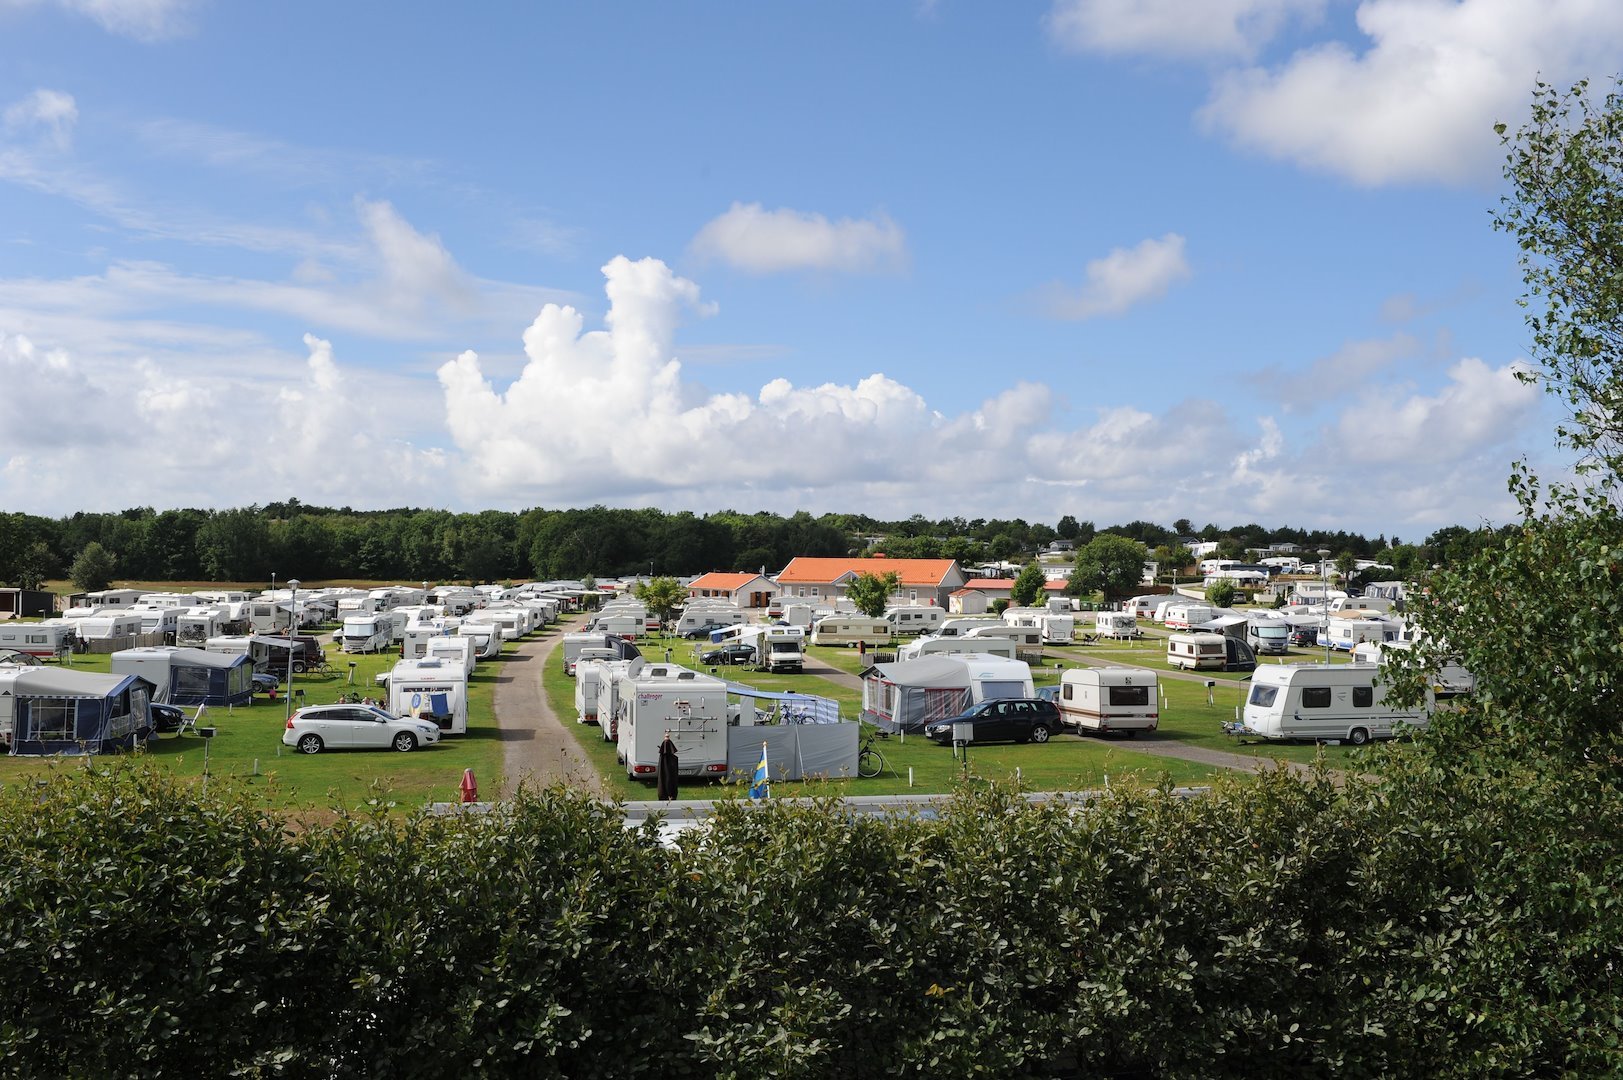 Kampeerplaats caravan/stacaravan/tent met elektriciteit - gras